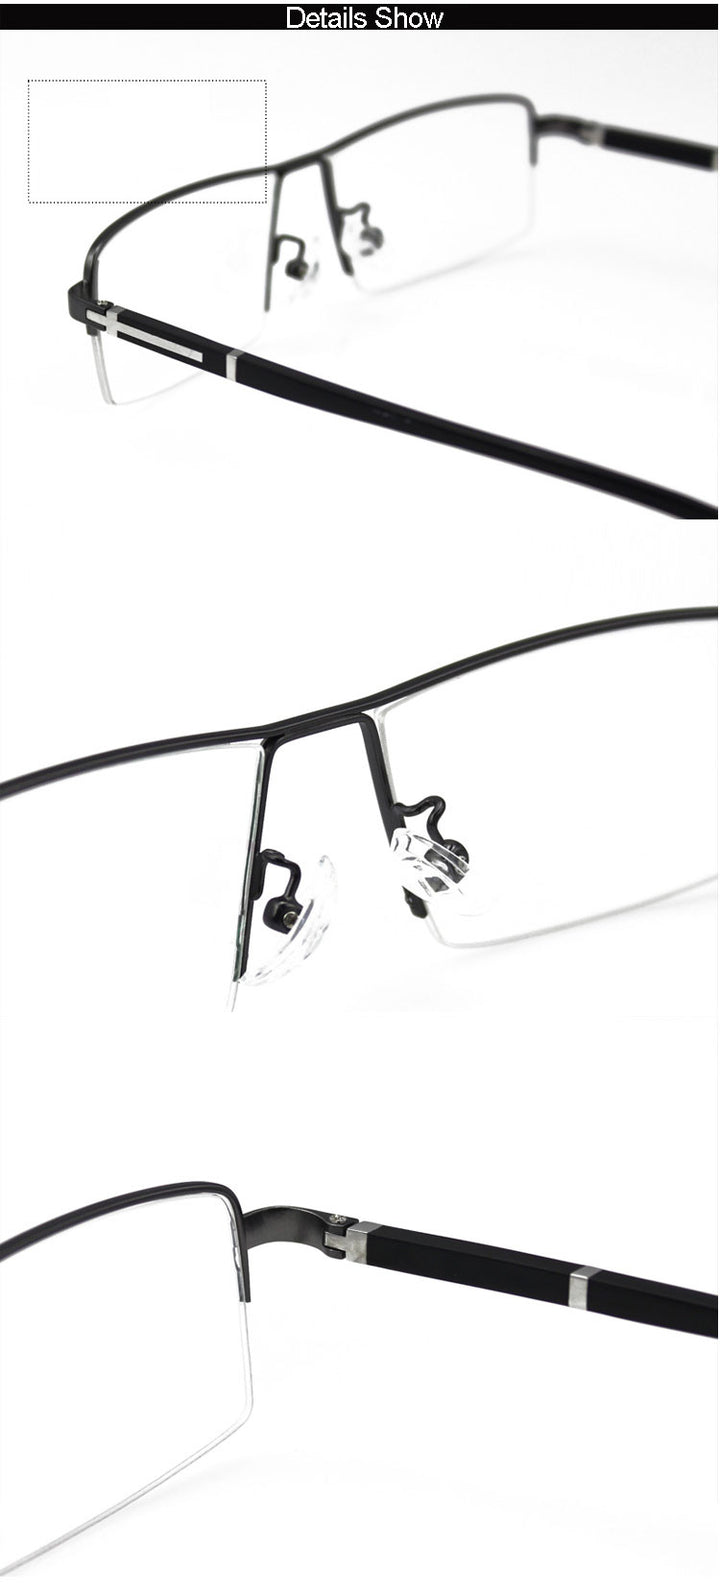 Reven Jate Men's Semi Rim Square Alloy Eyeglasses Frames Reven Jate   